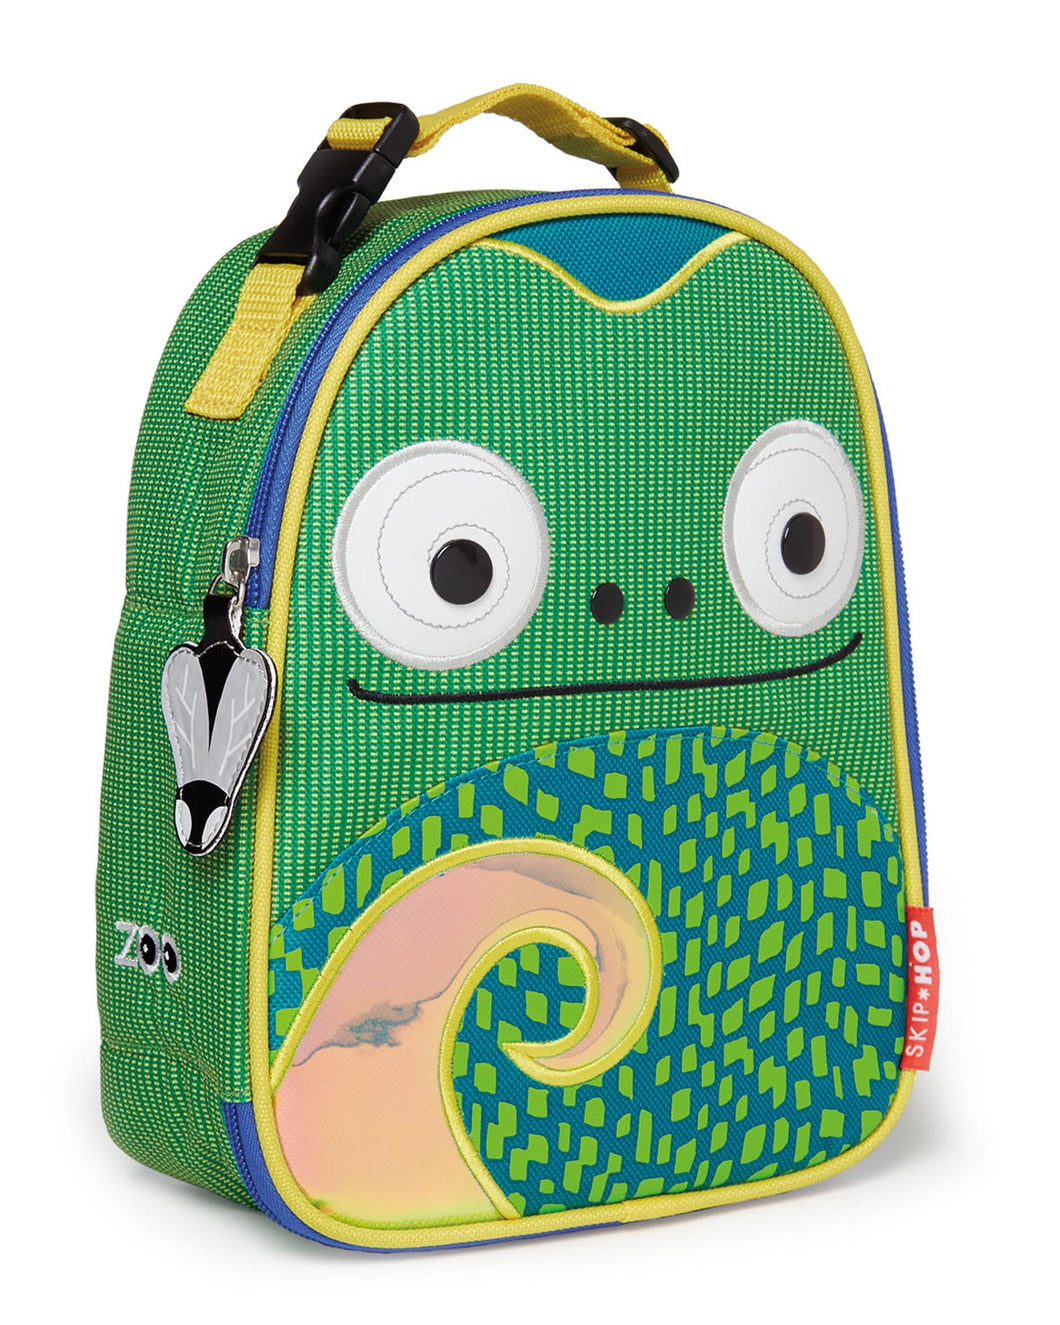 Skip Hop Kids Lunch Bag - Chameleon - CeCe Fashion Boutique